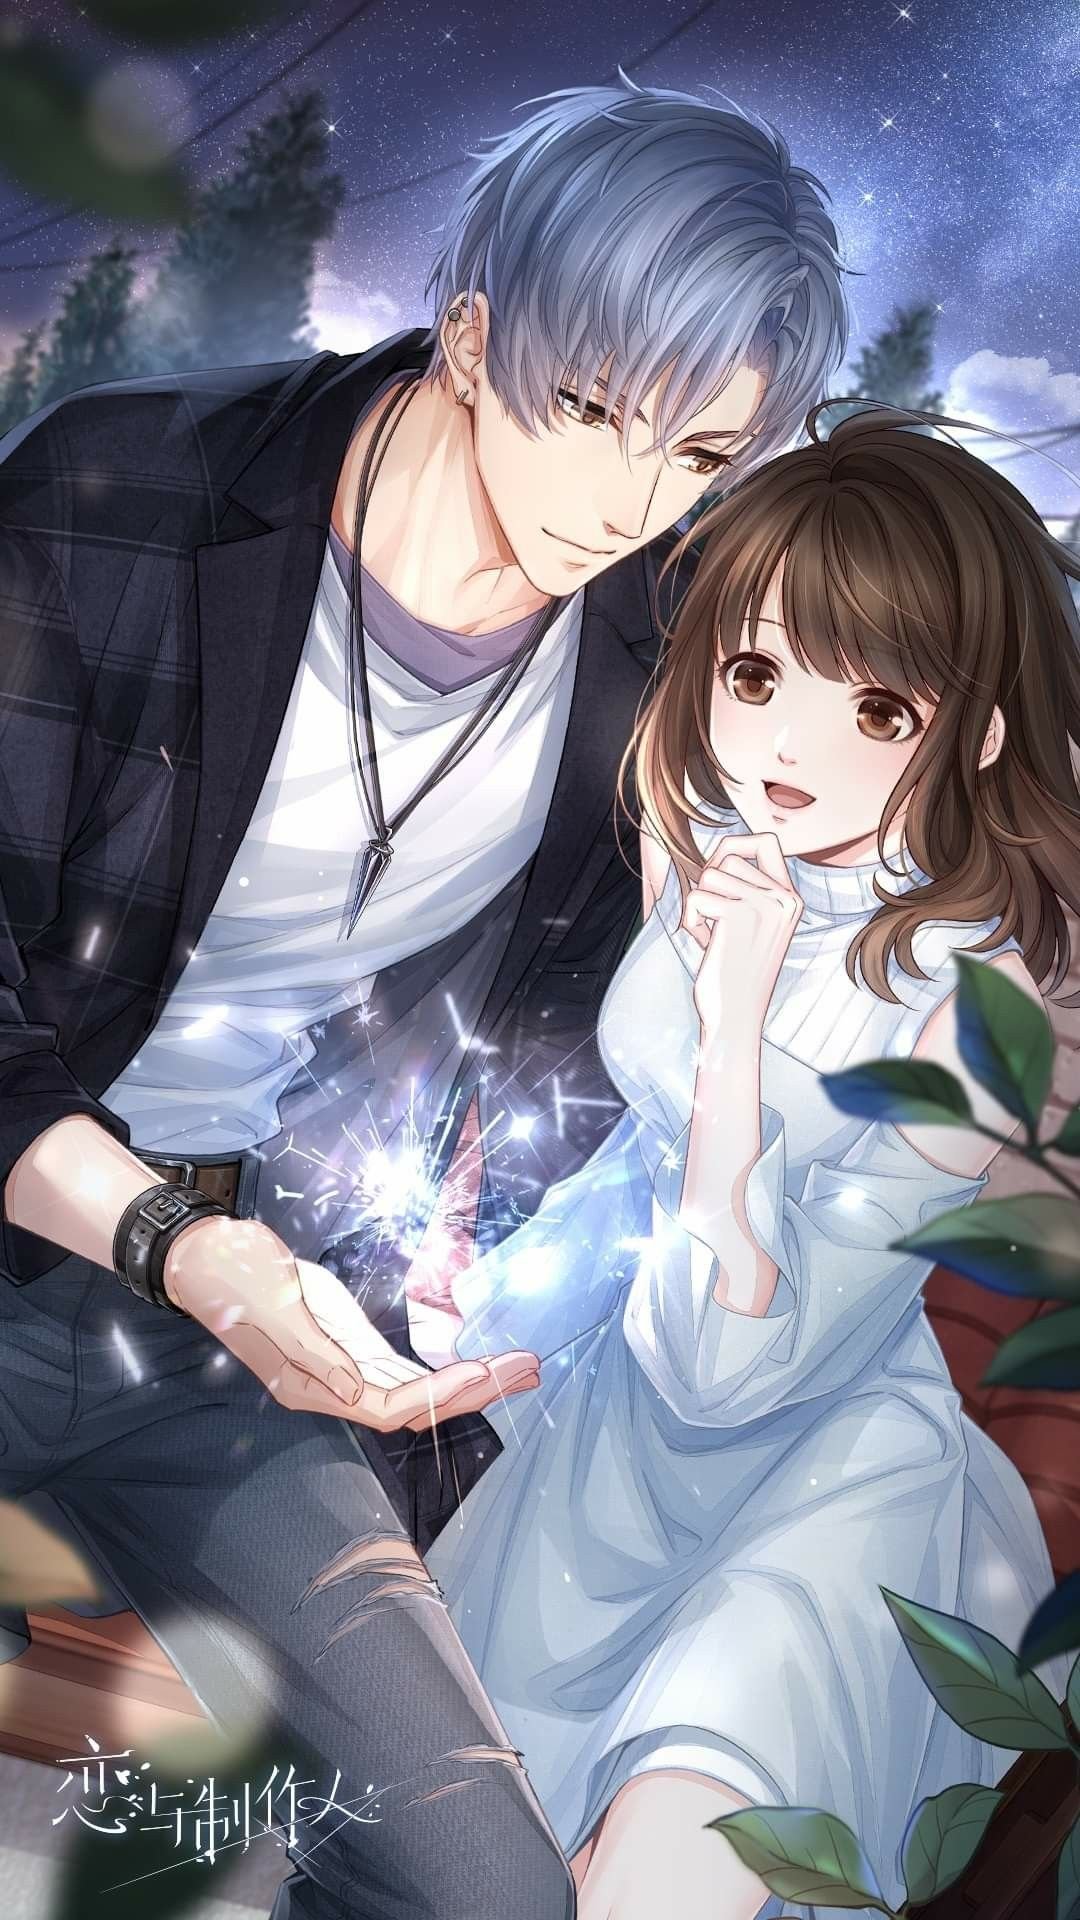 900 Anime  Arts Couples ideas in 2023  anime love couple cute couple  art anime